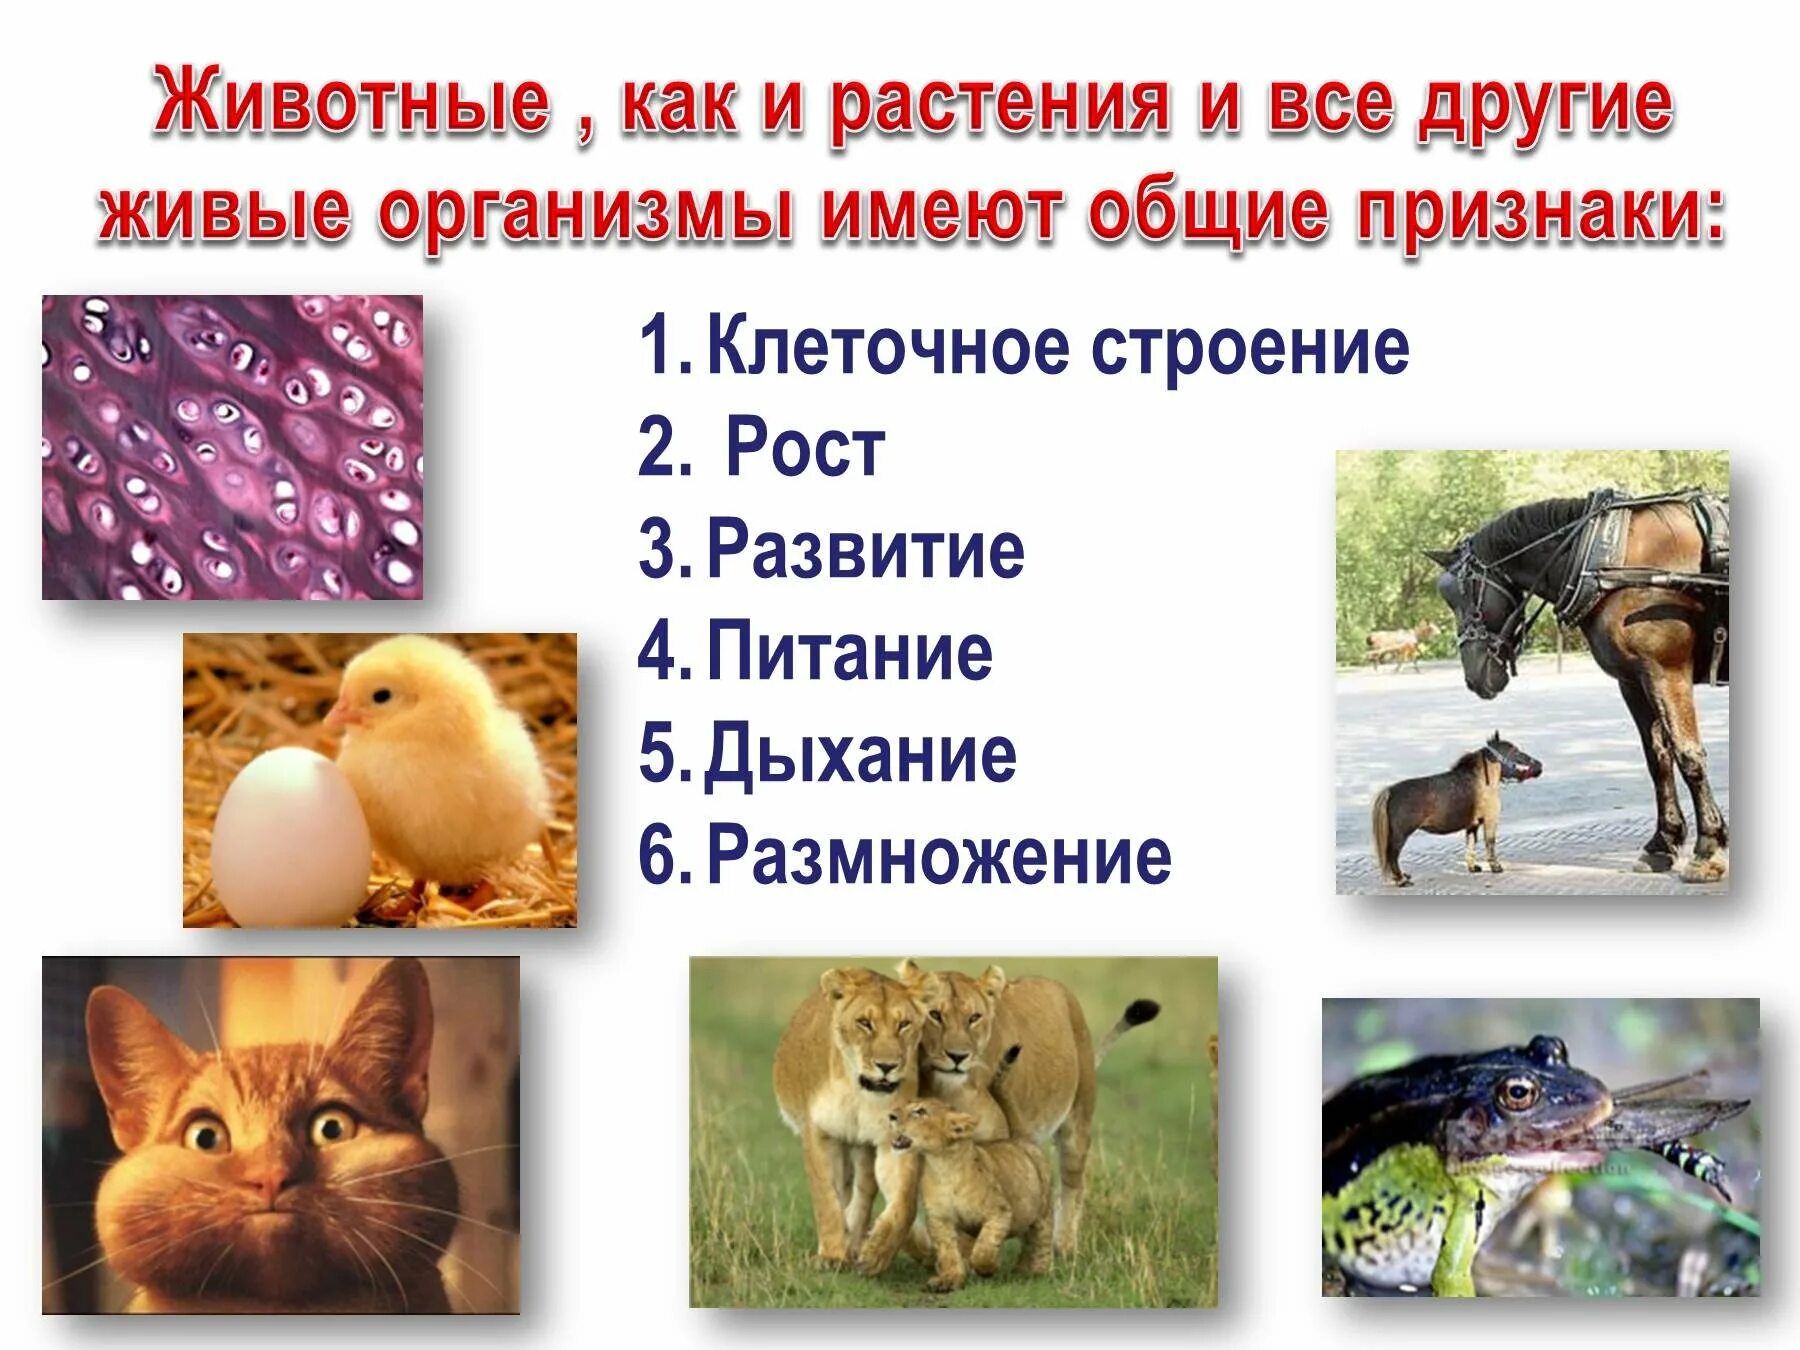 Animal organism. Признаки животных. Характерные особенности животных. Живые организмы животные. Общие признаки животных.